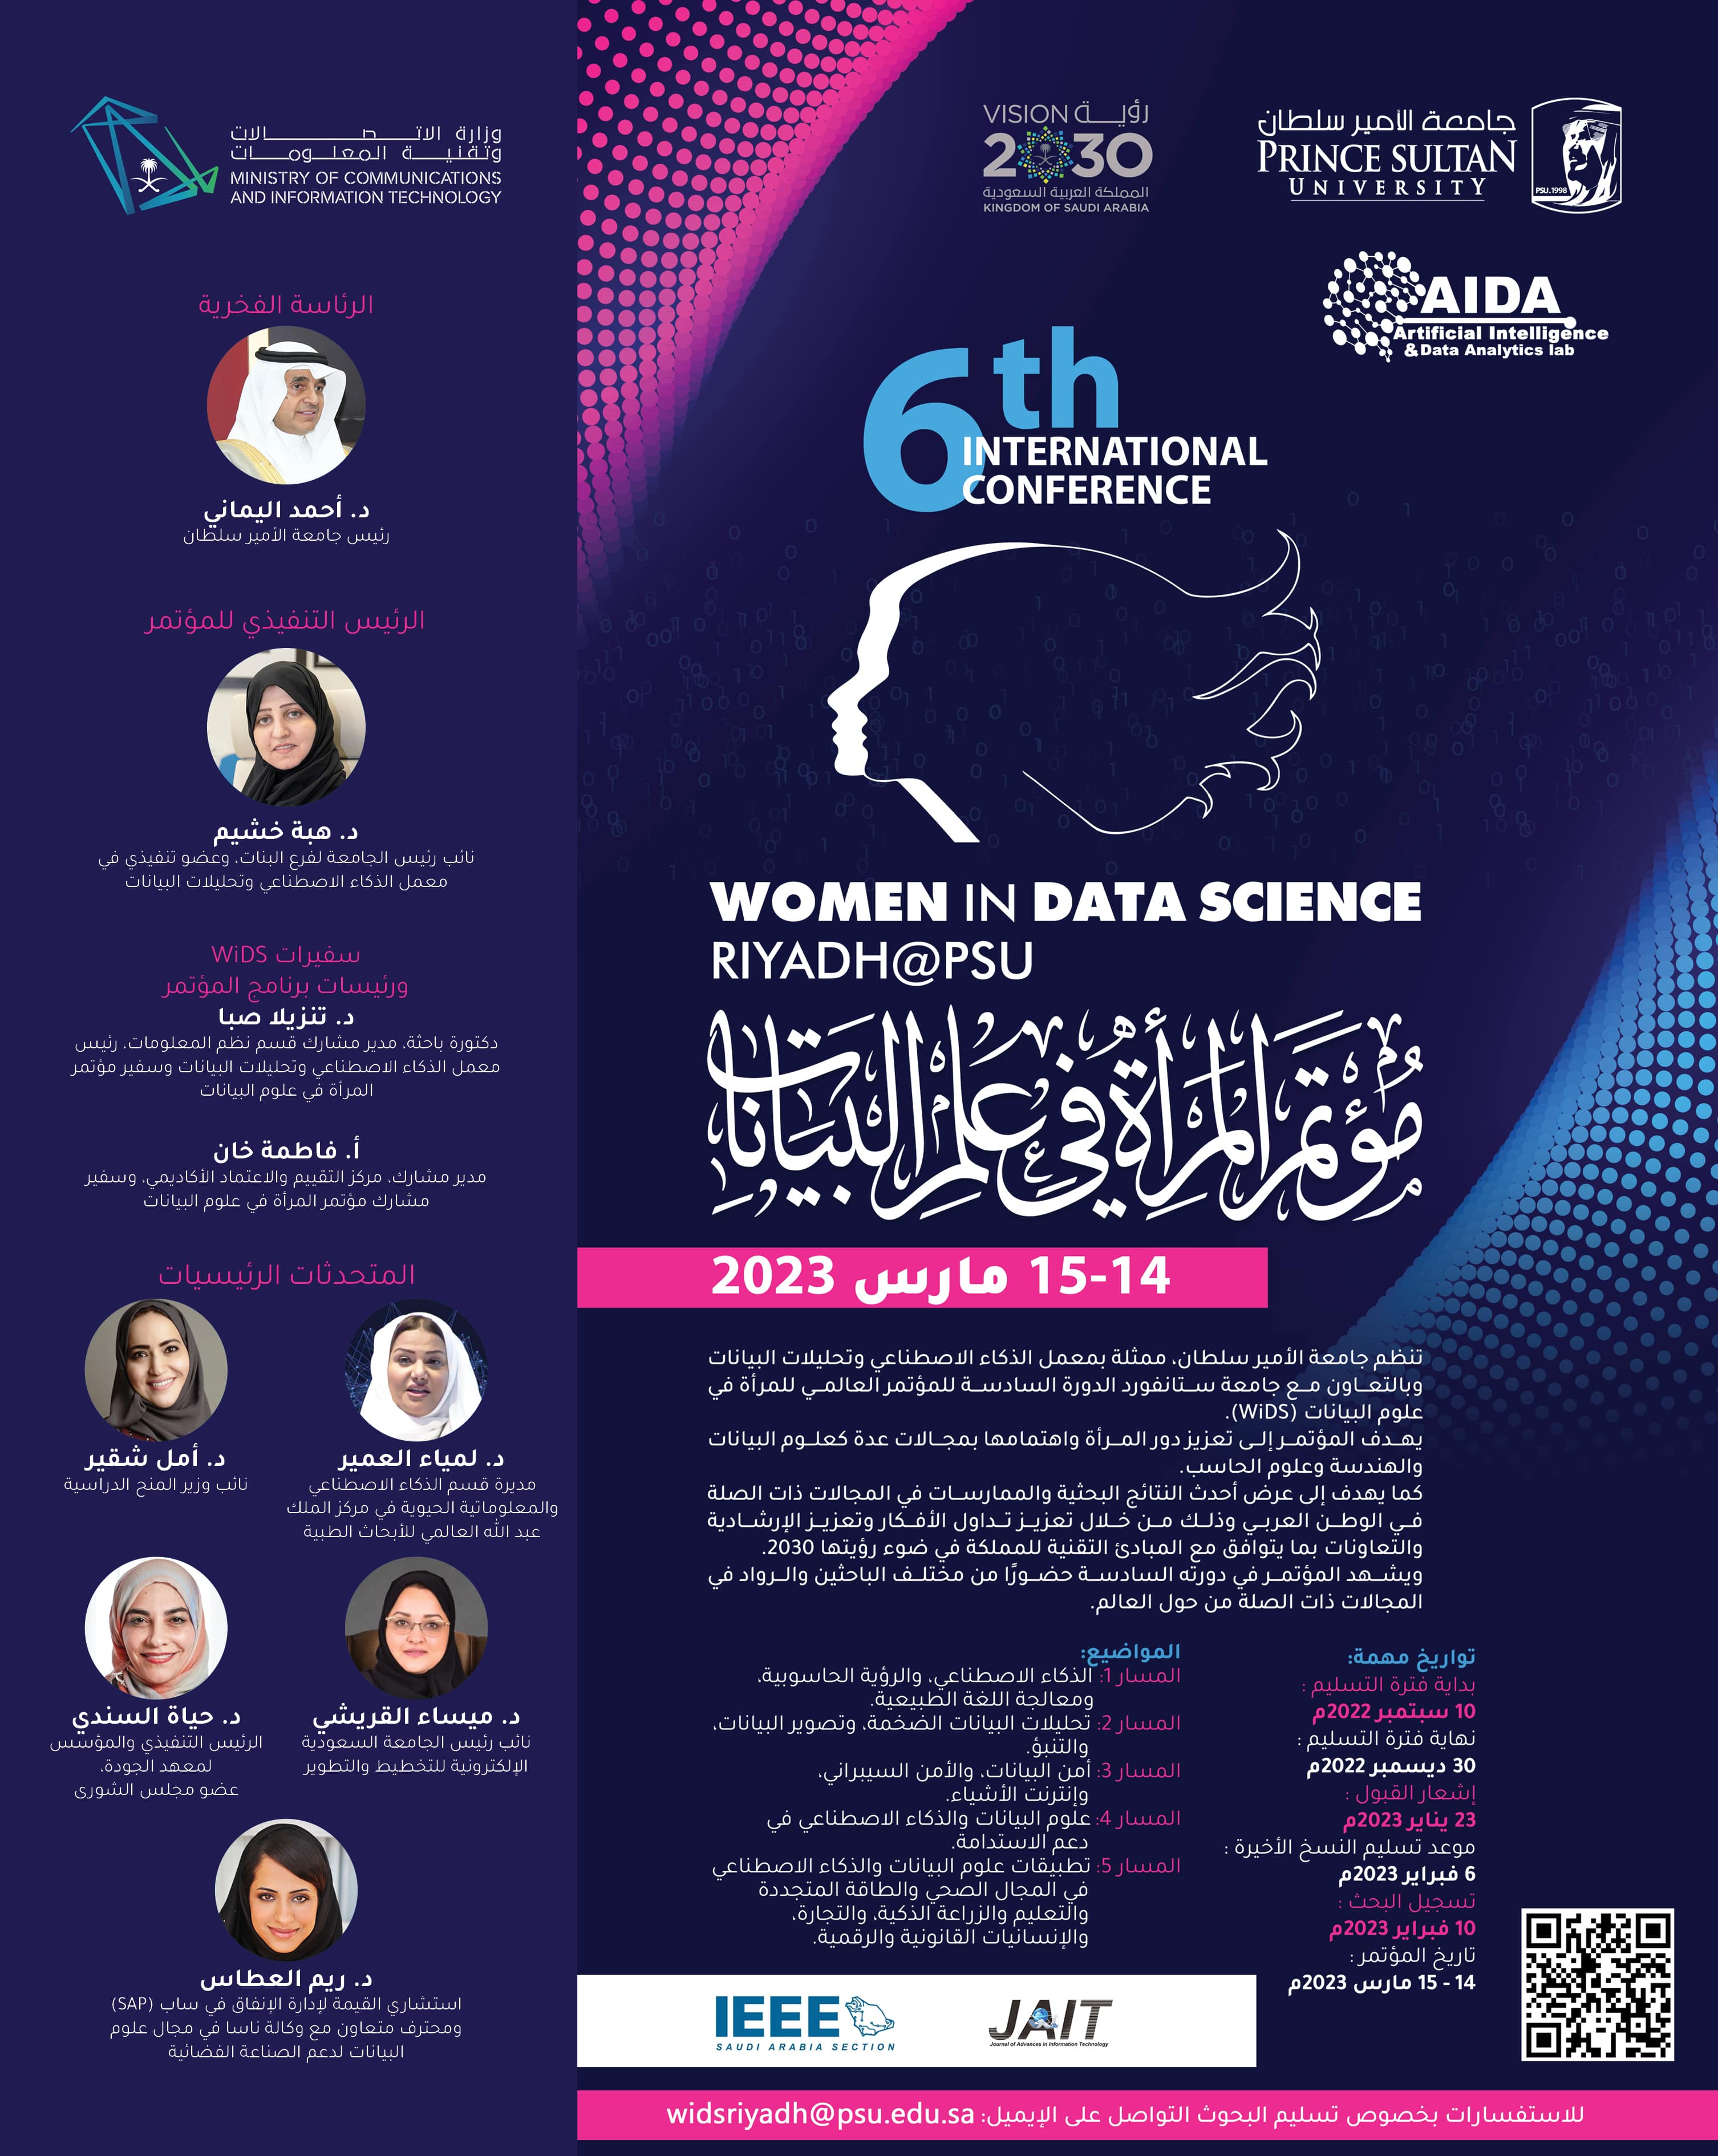 المؤتمر الدولي السادس للمرأة في علم البيانات